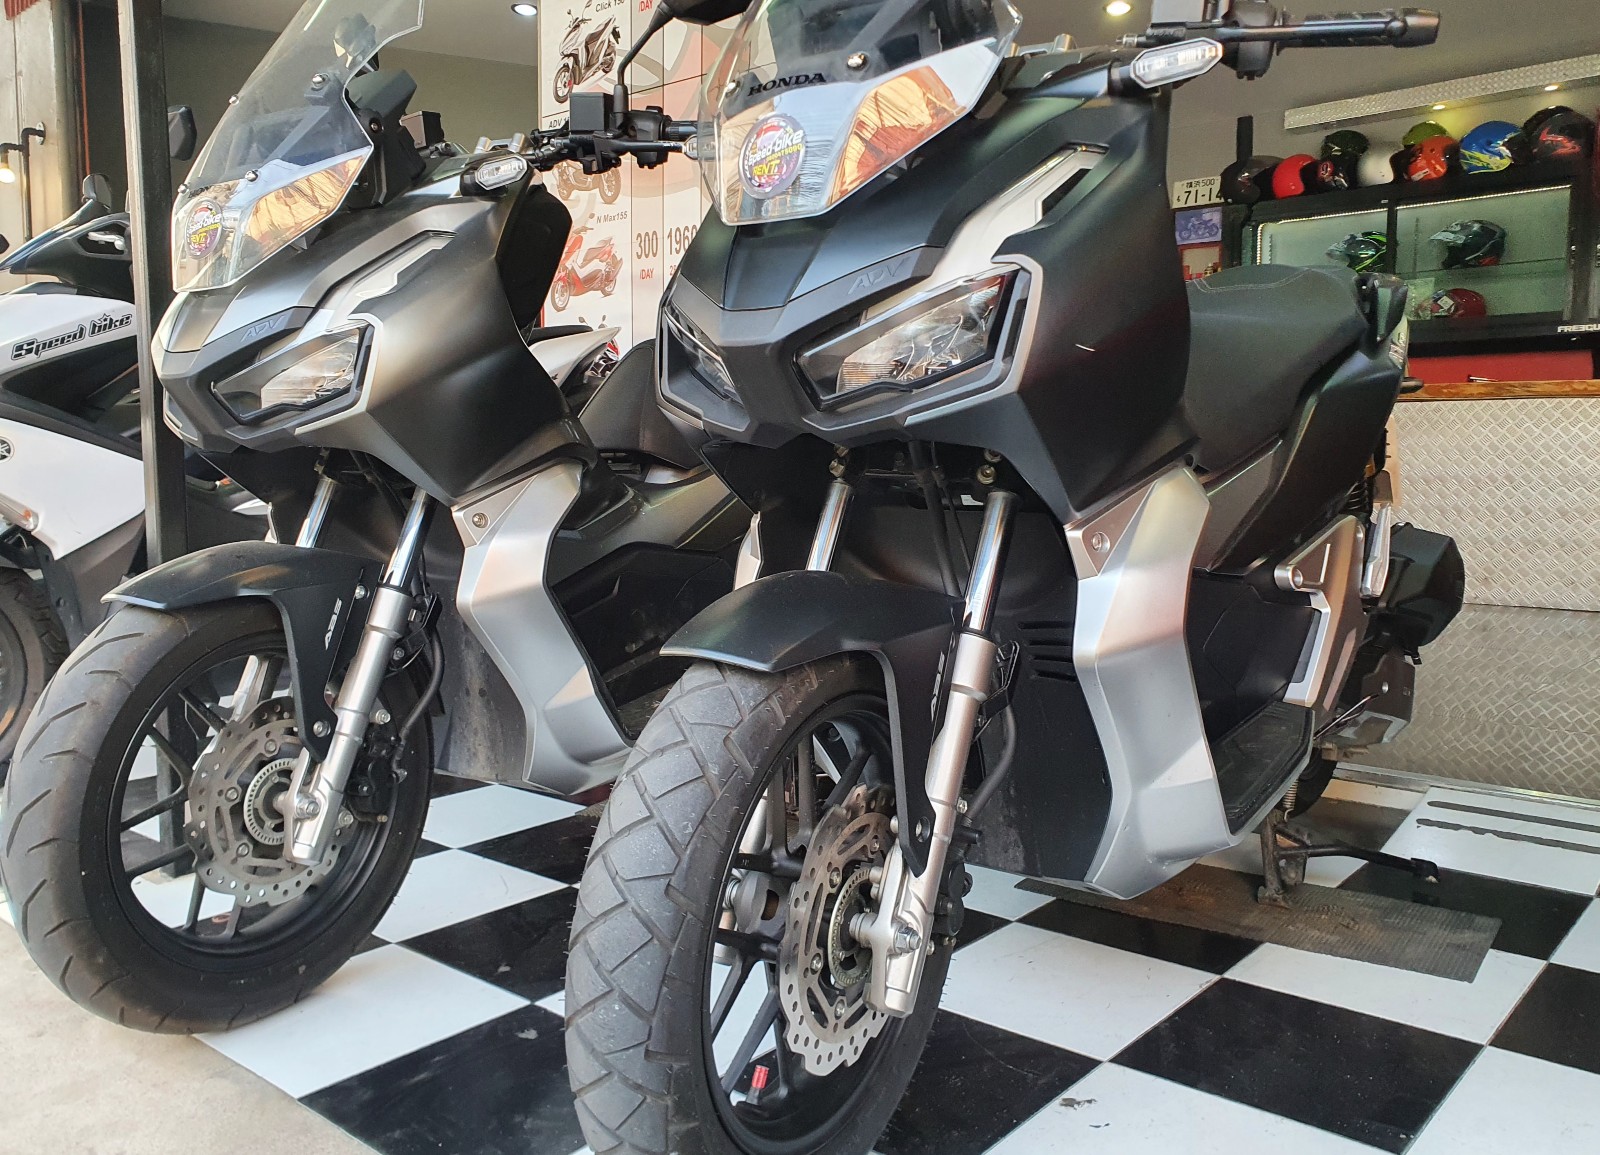 Pattaya hire motorbike